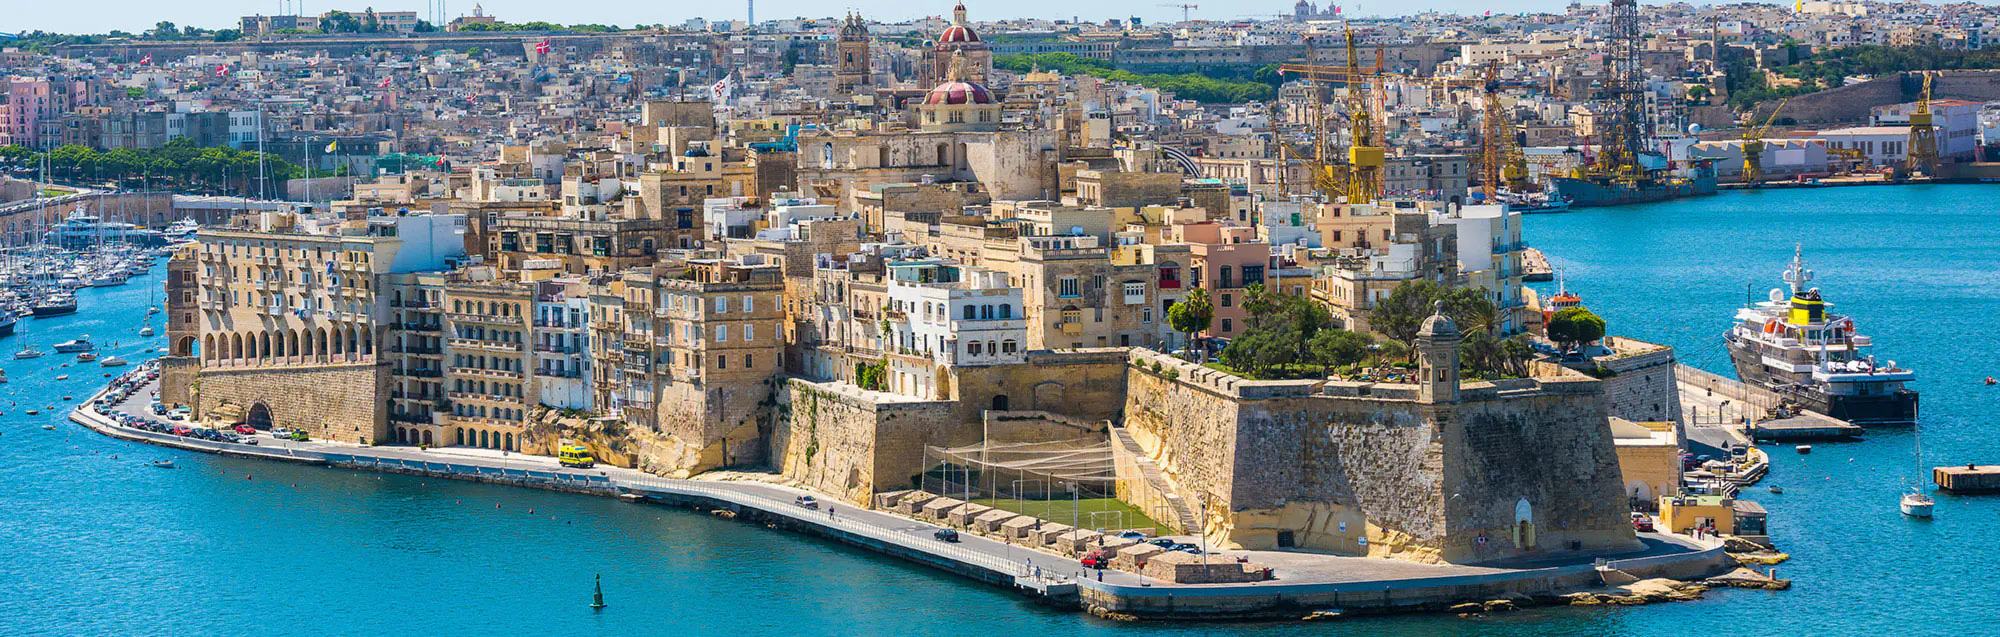 Escuelas de inglés para adultos, niños y adolescentes en Malta isla principal